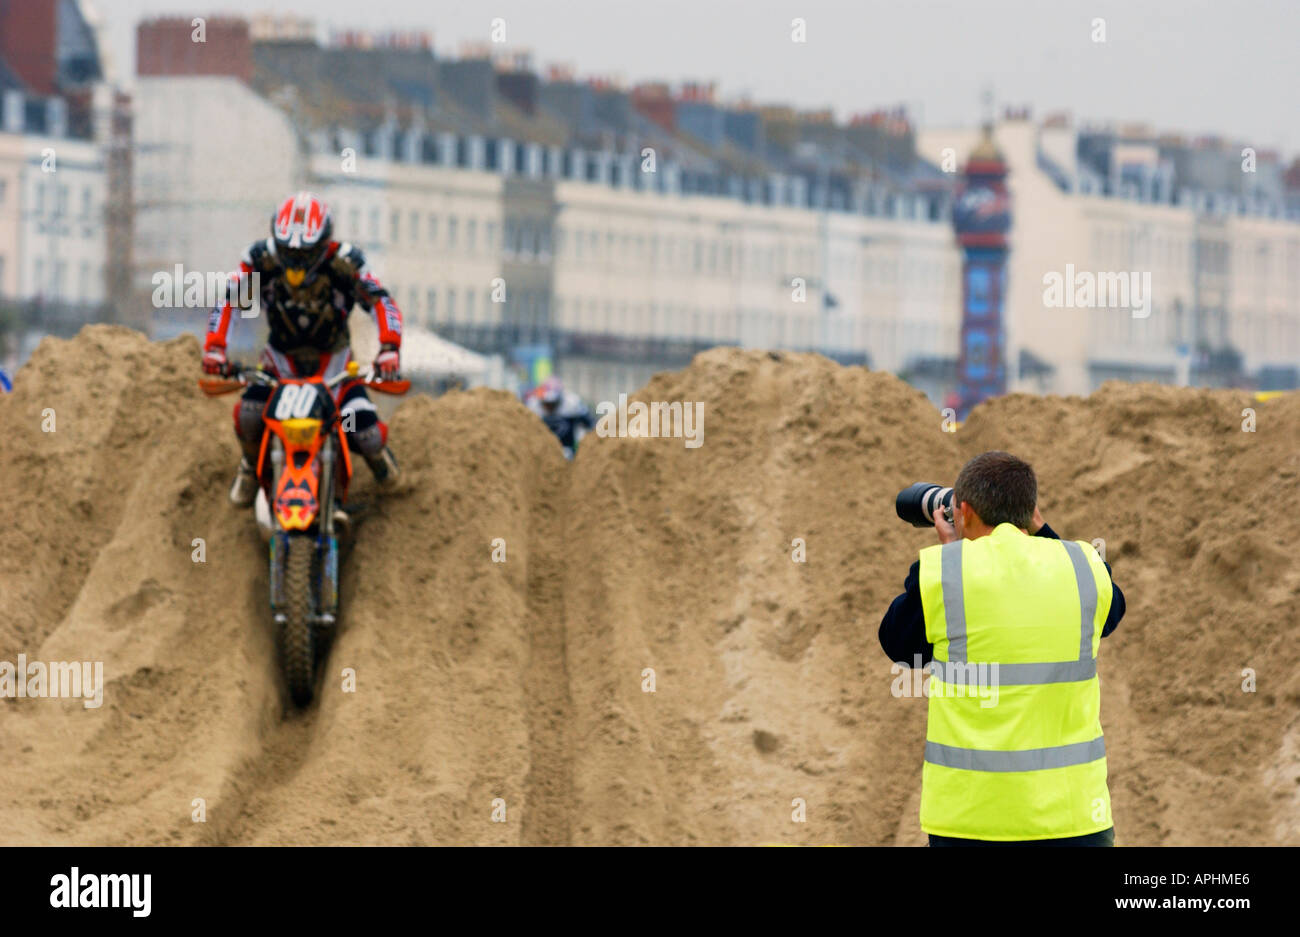 Photographe de sports de travailler à un événement de motocross Banque D'Images